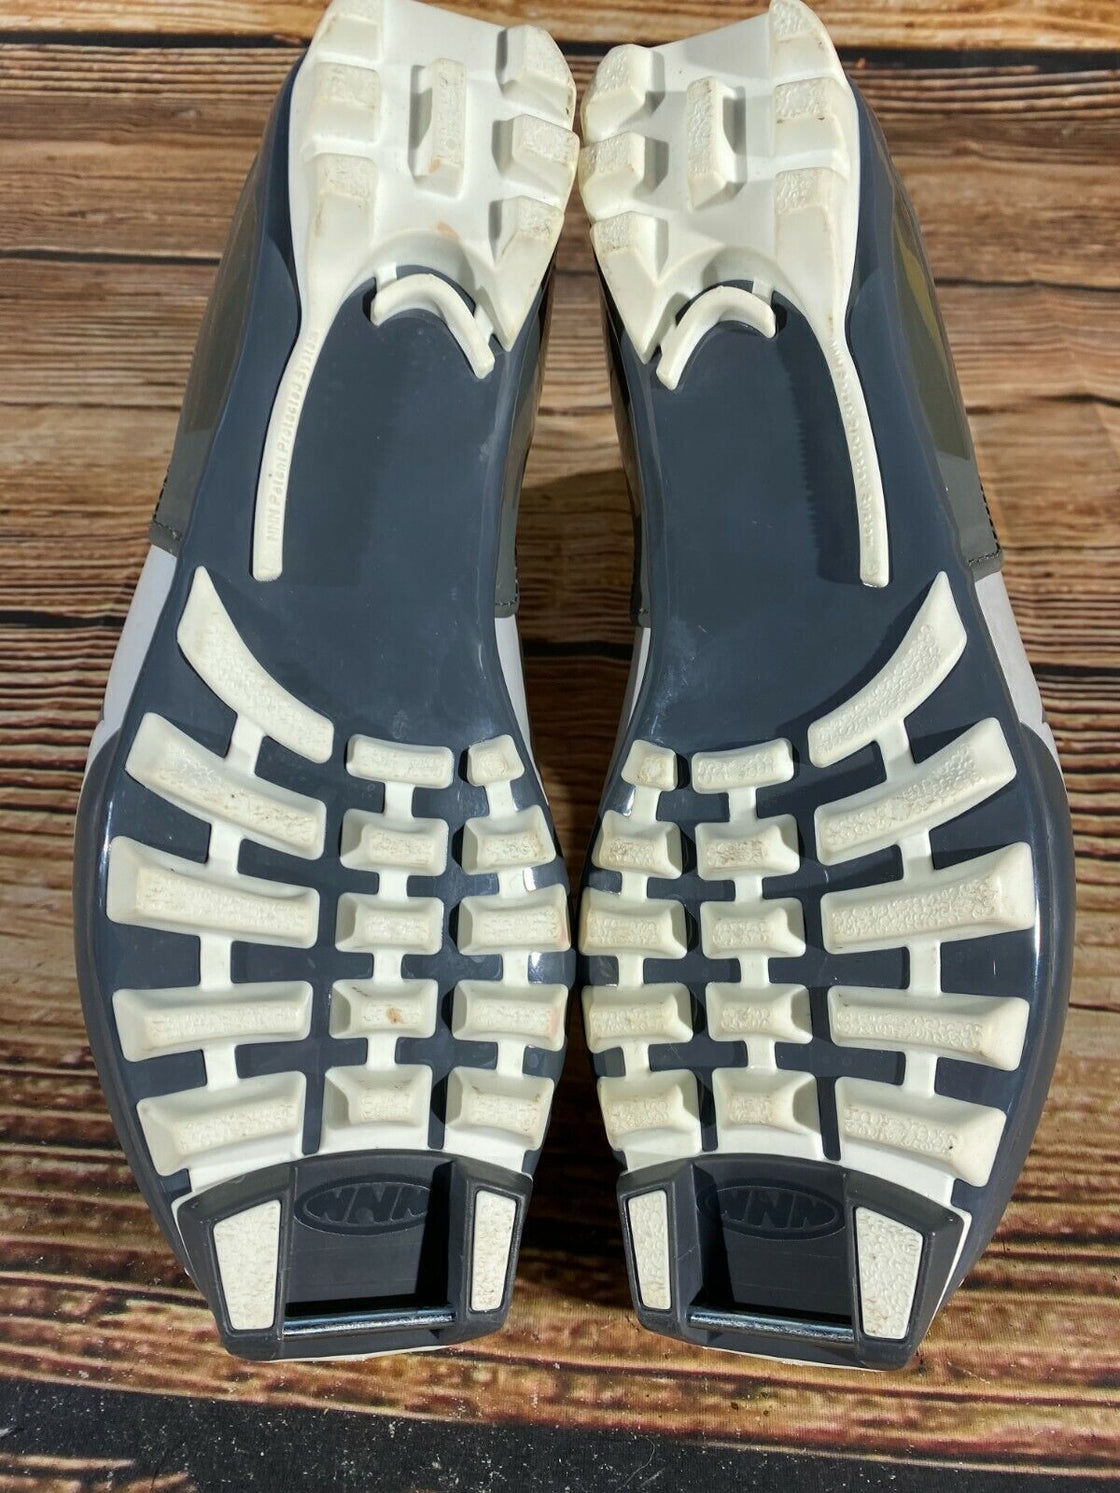 FISCHER Comfort Style Cross Country Ski Boots Size EU41 US8 NNN bindings